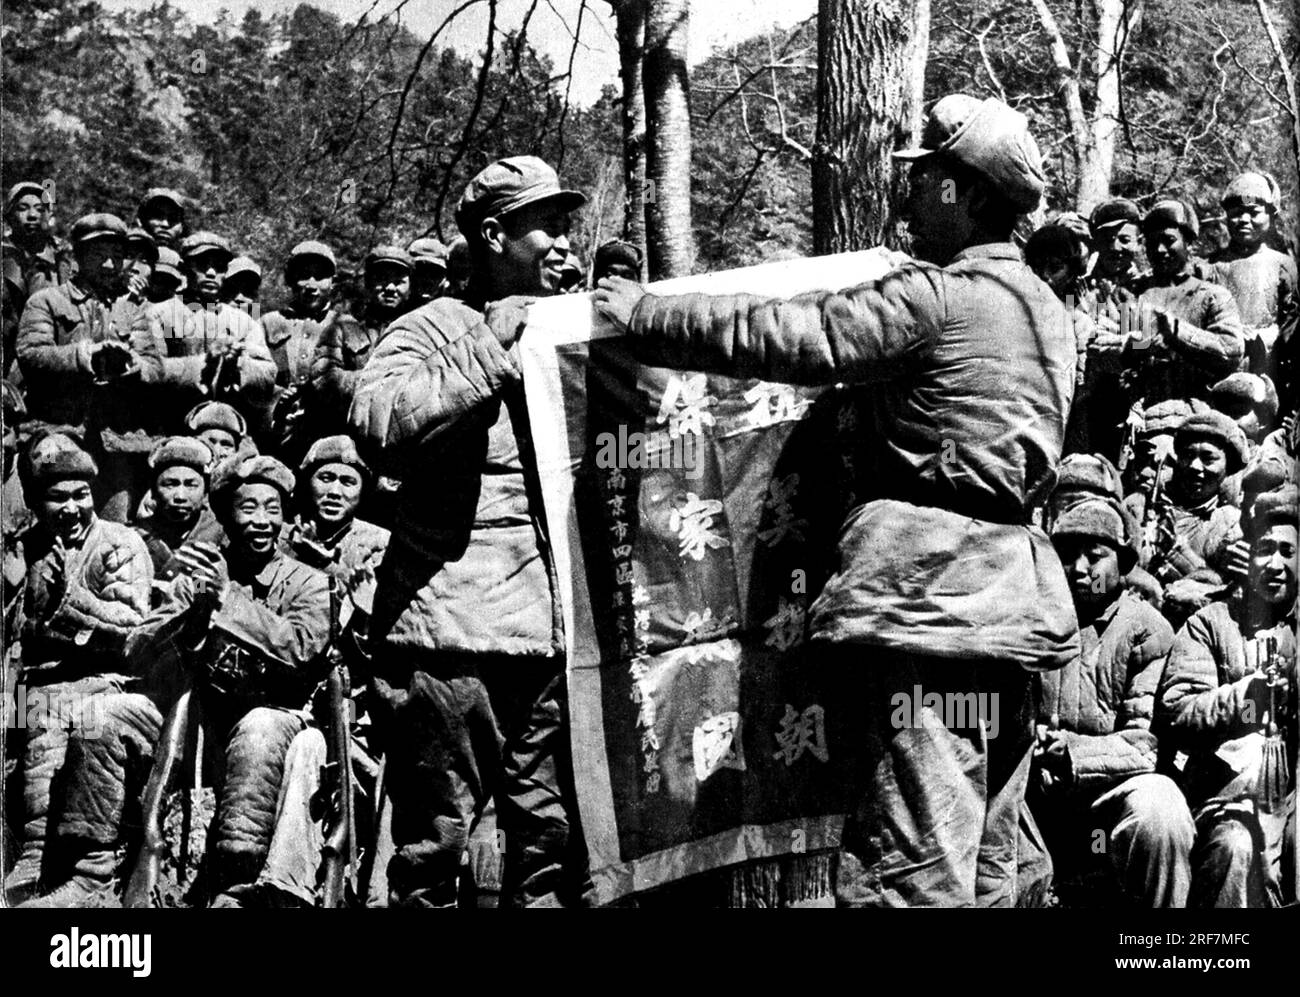 La Guerre de Coree (1950-1953), l'Armee chinoise en Coree du Nord, in "la Guerre de Coree", Chine, 1959, Coll. Selva (l'esercito cinese in Corea del Nord, da "Guerra di Corea", Cina 1959) Foto Stock